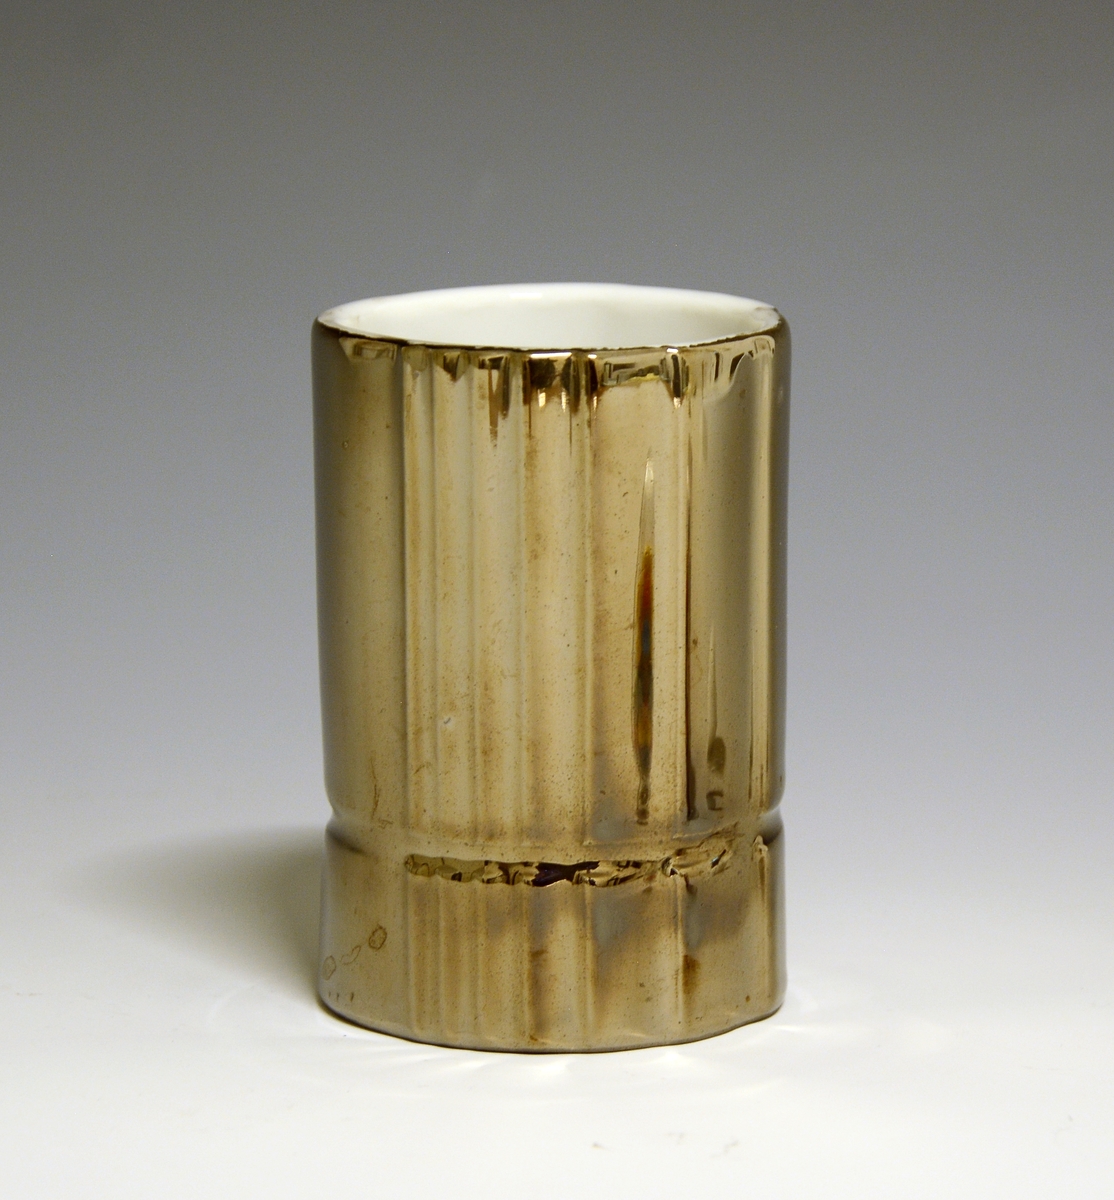 Vase og telysholder av porselen. Fungerer som vase den ene veien og telysholder den andre veien. Sylinderformet med vertikale riller. Horisontal rille litt over bunnen. Hvit glasur. Dekorert i brunt. Ustemplet.
Design: Grete Rønning.